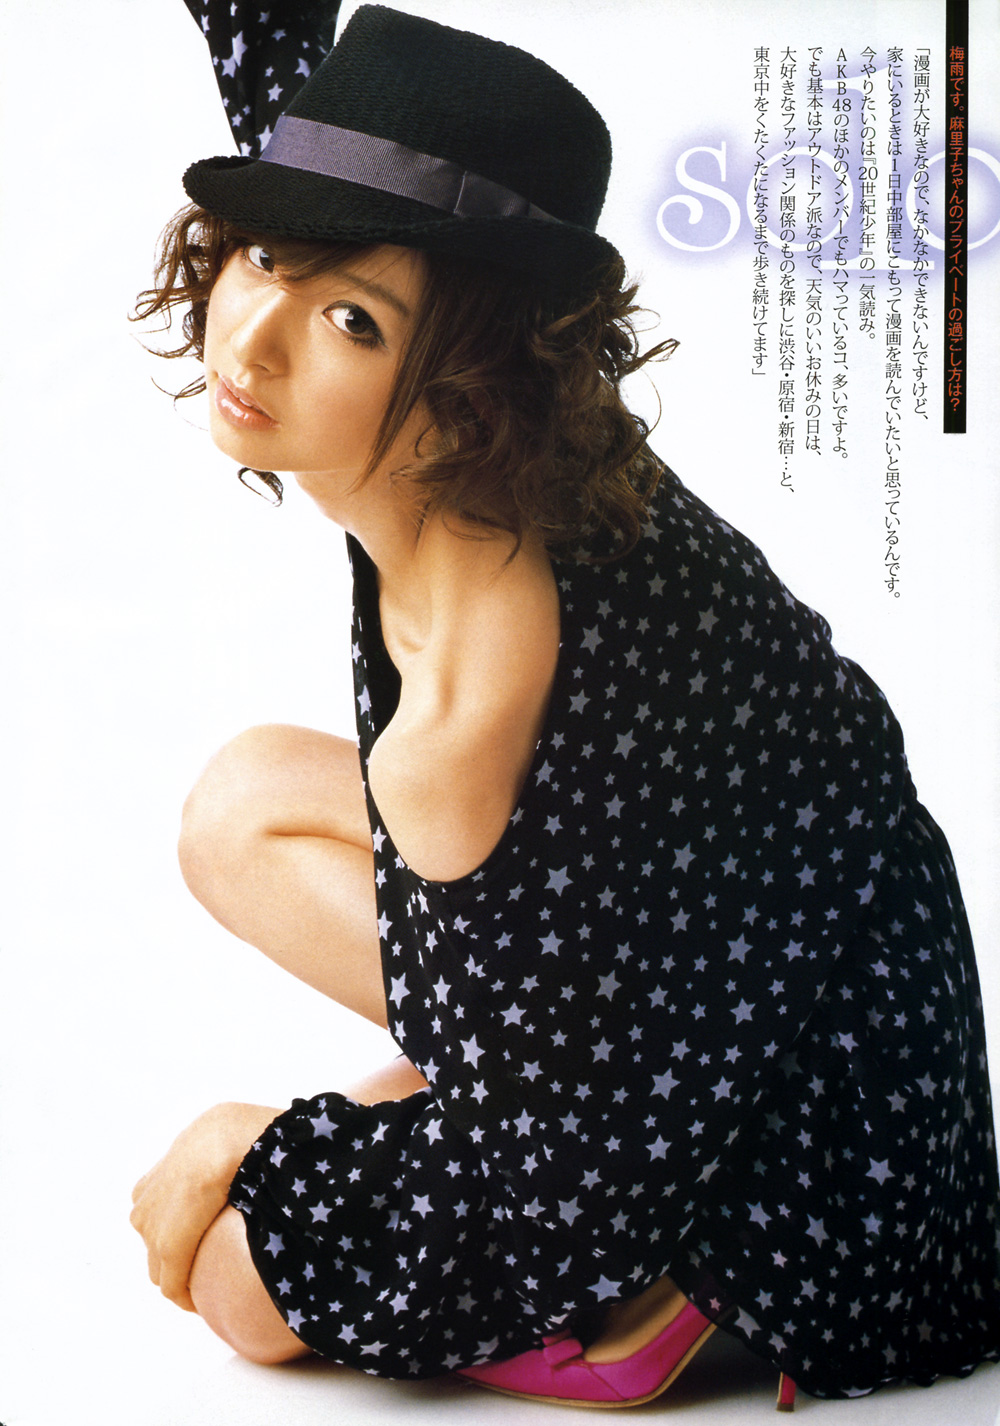 Mariko Magazine 01